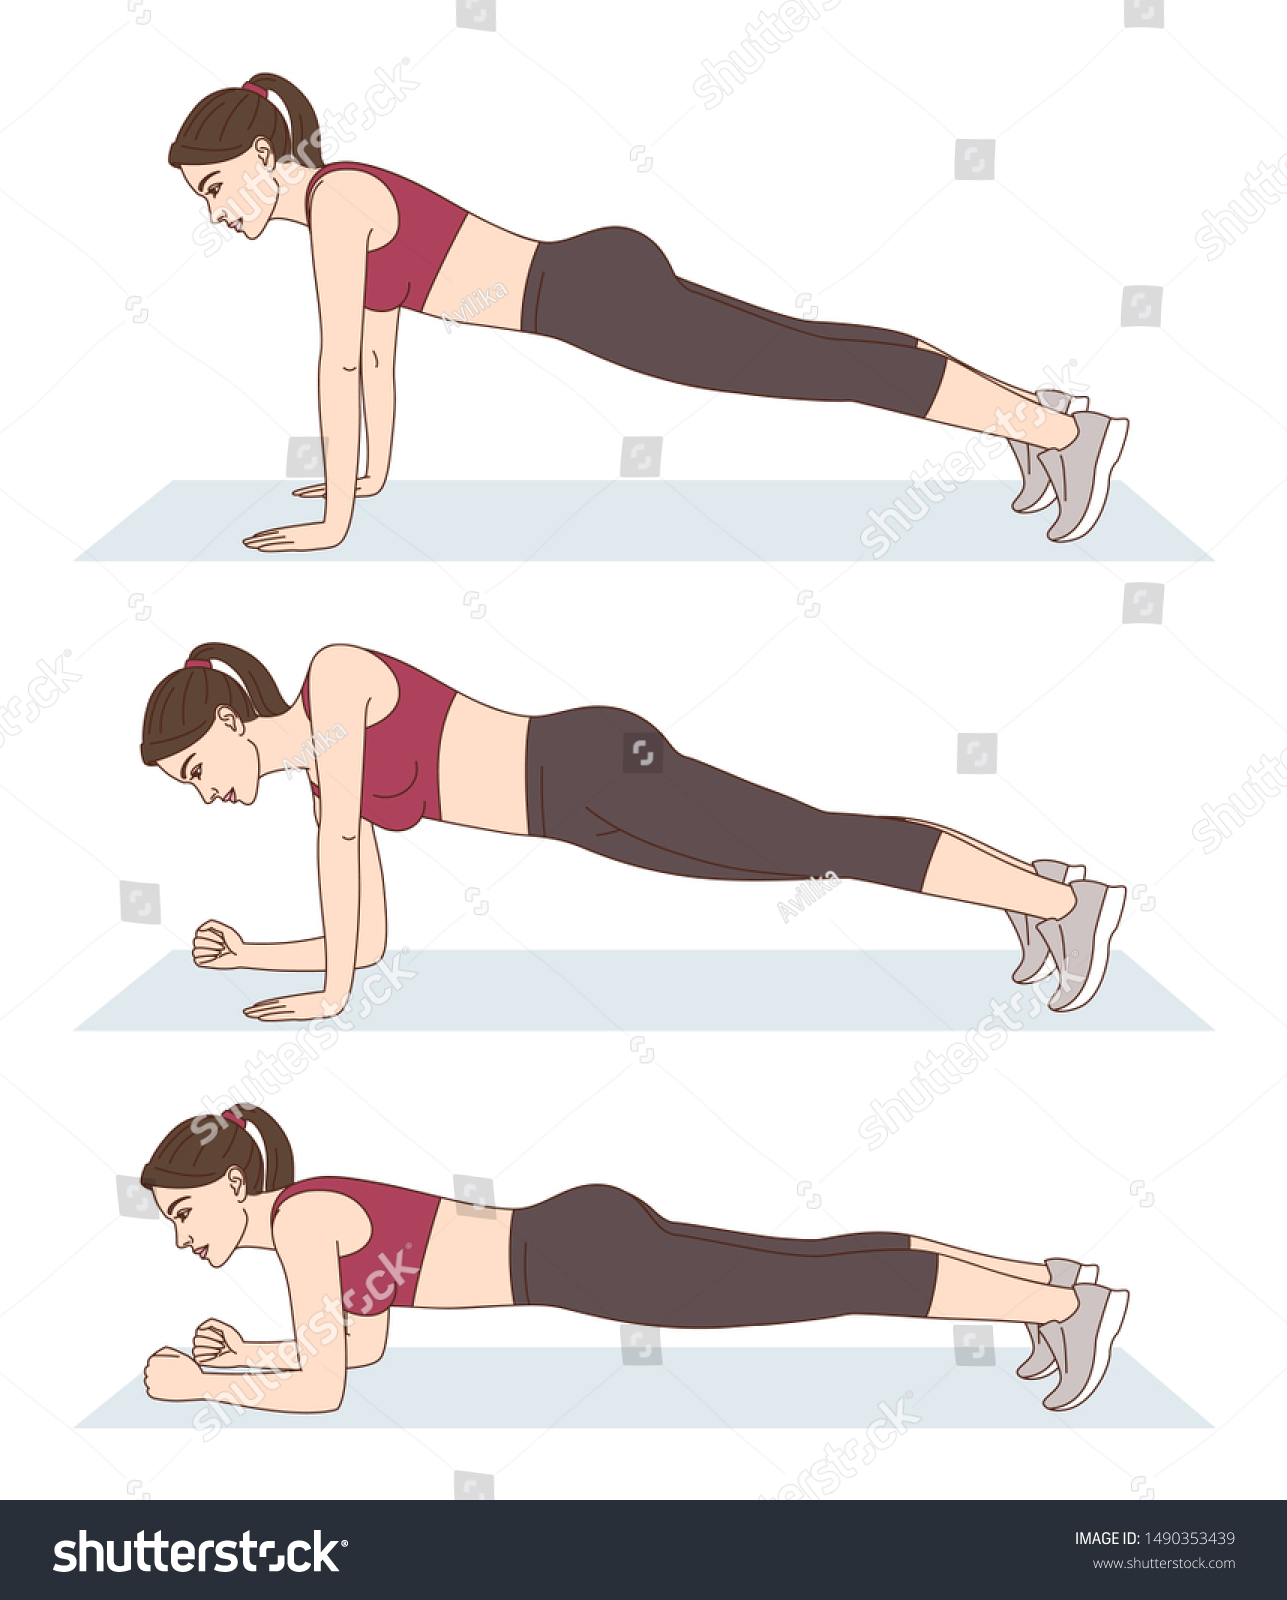 Woman Does Sports Exercises Down Planks Stokovye Izobrazheniya V Hd I Milliony Drugih Stokovyh Fotografij Illyustracij I Vektornyh Izobrazhenij Bez Licenzionnyh Platezhej V Kollekcii Shutterstock Ezhednevno Dobavlyayutsya Tysyachi